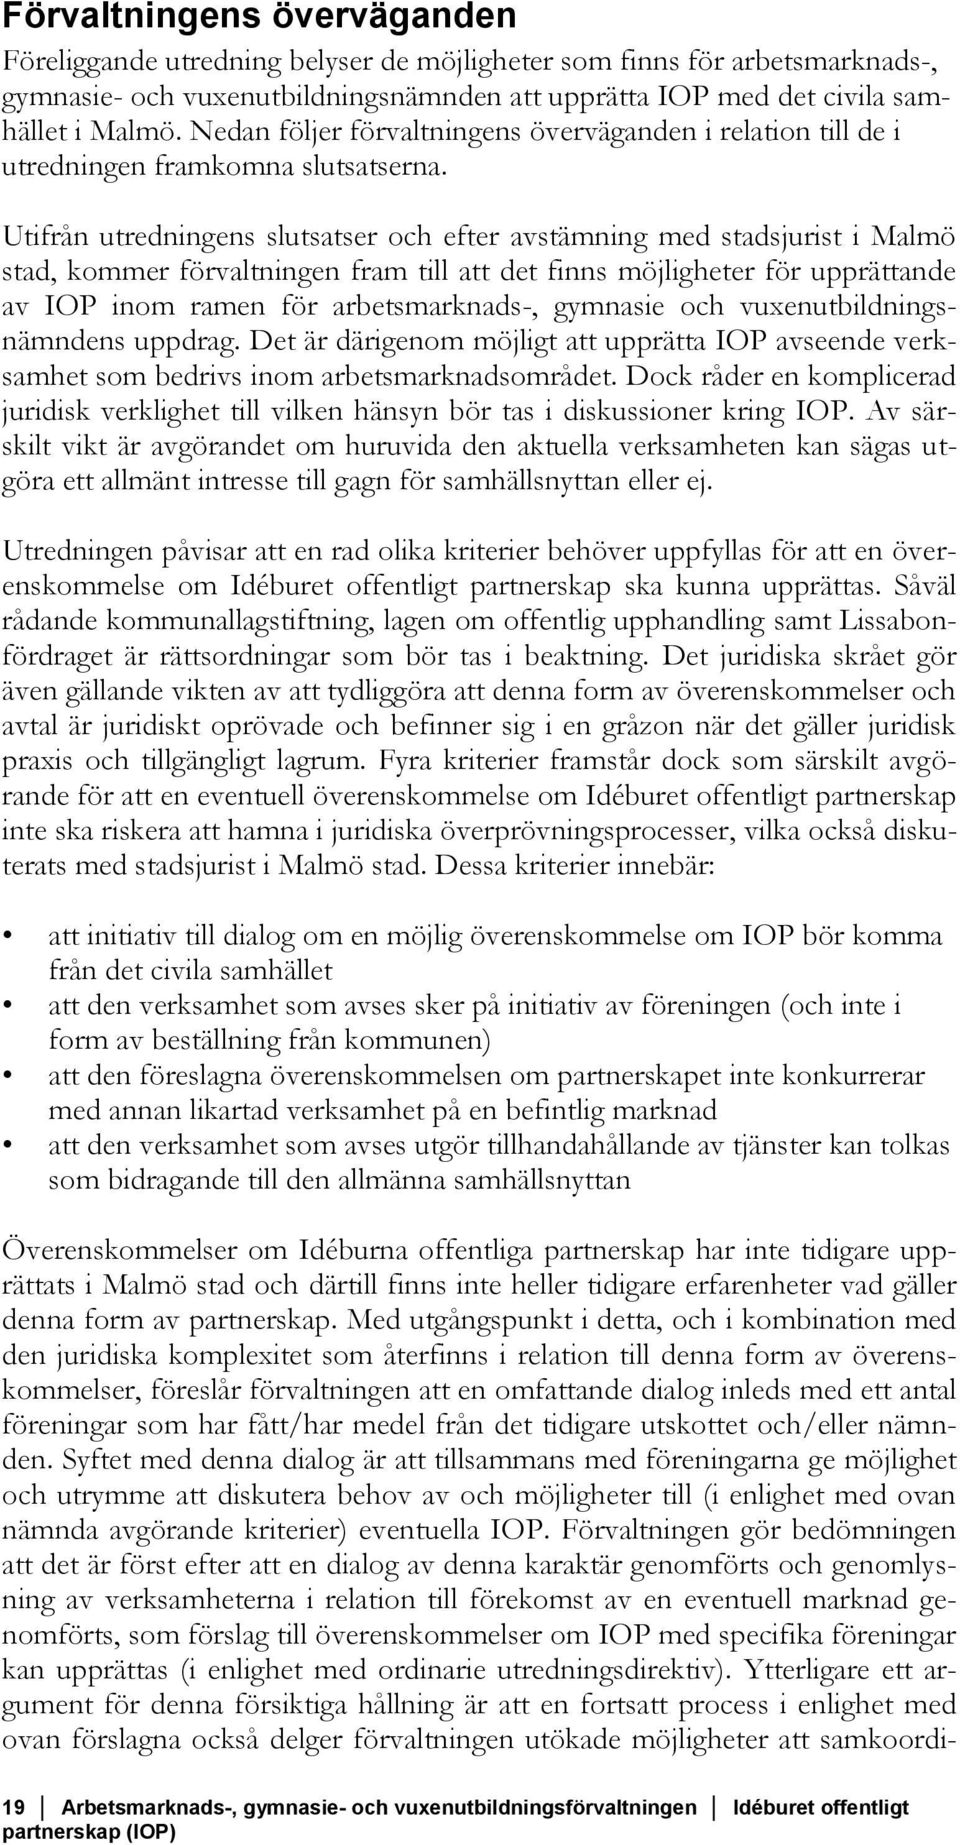 Utifrån utredningens slutsatser och efter avstämning med stadsjurist i Malmö stad, kommer förvaltningen fram till att det finns möjligheter för upprättande av IOP inom ramen för arbetsmarknads-,